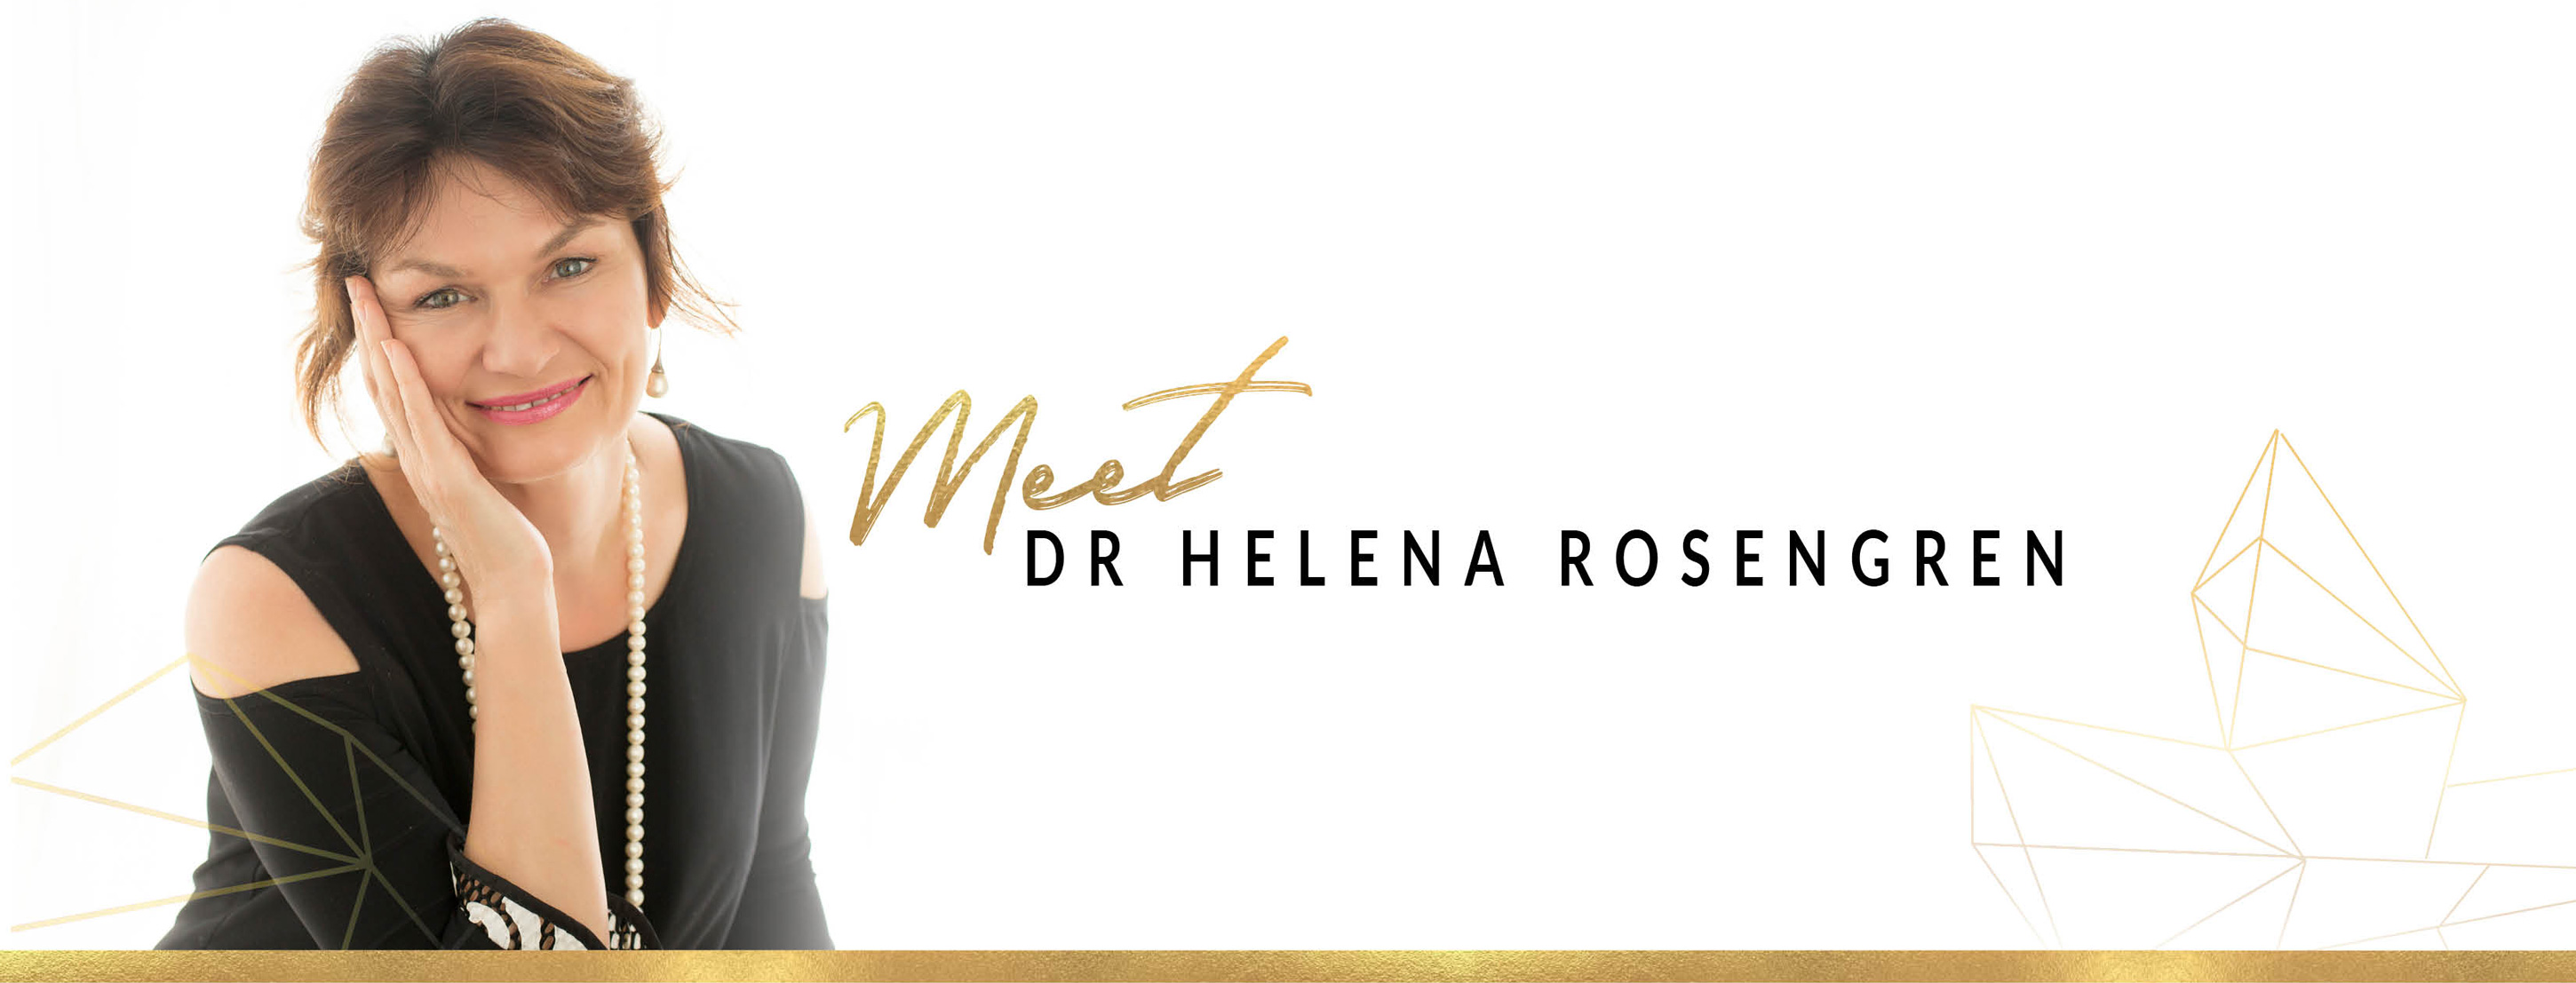 Meet-Dr-Helena